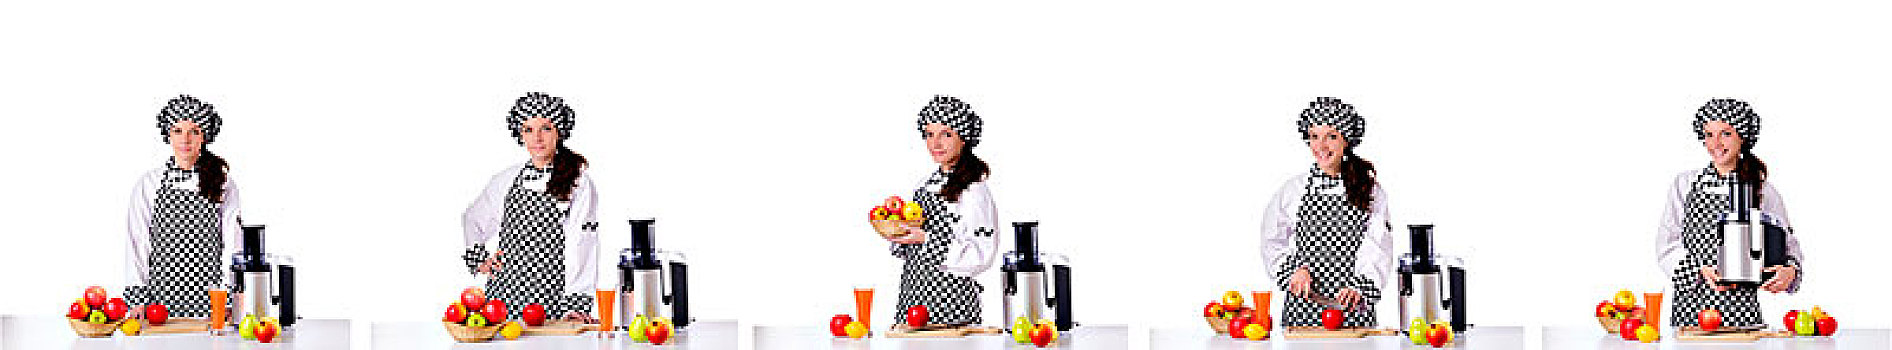 女性,厨师,水果,隔绝,白色背景